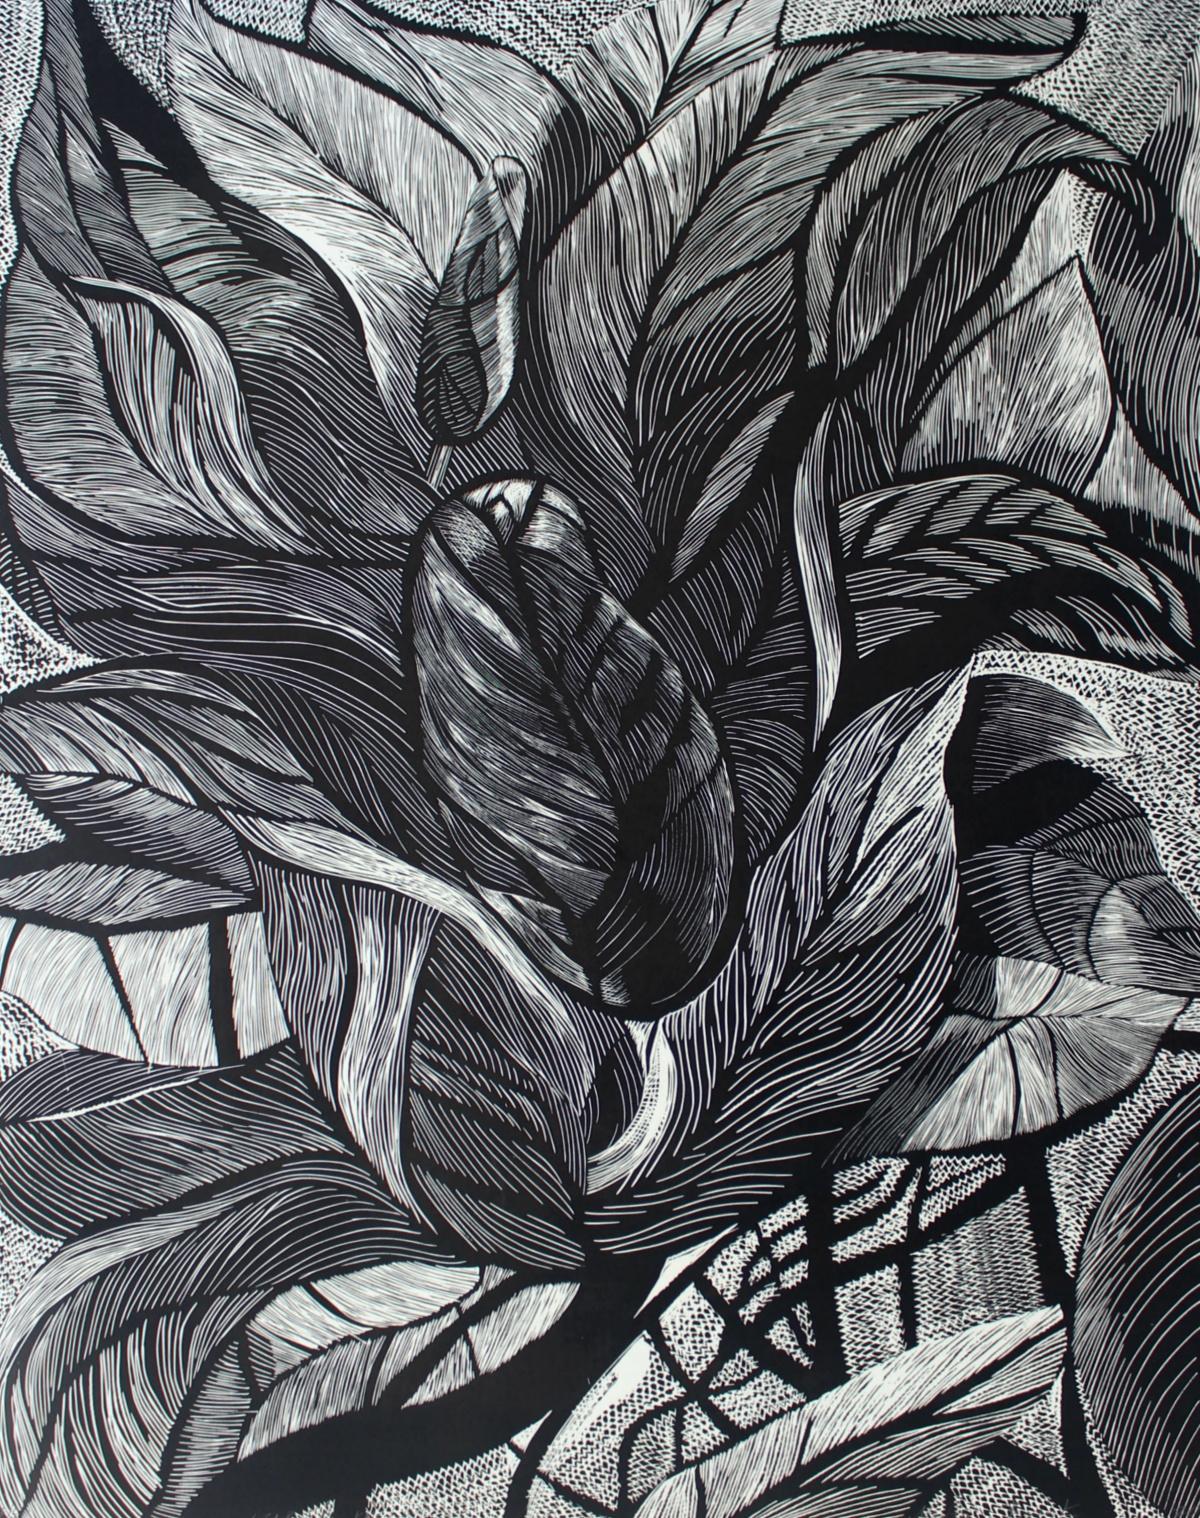 Fleur noire - XXIe siècle, linogravure florale contemporaine, noir et blanc